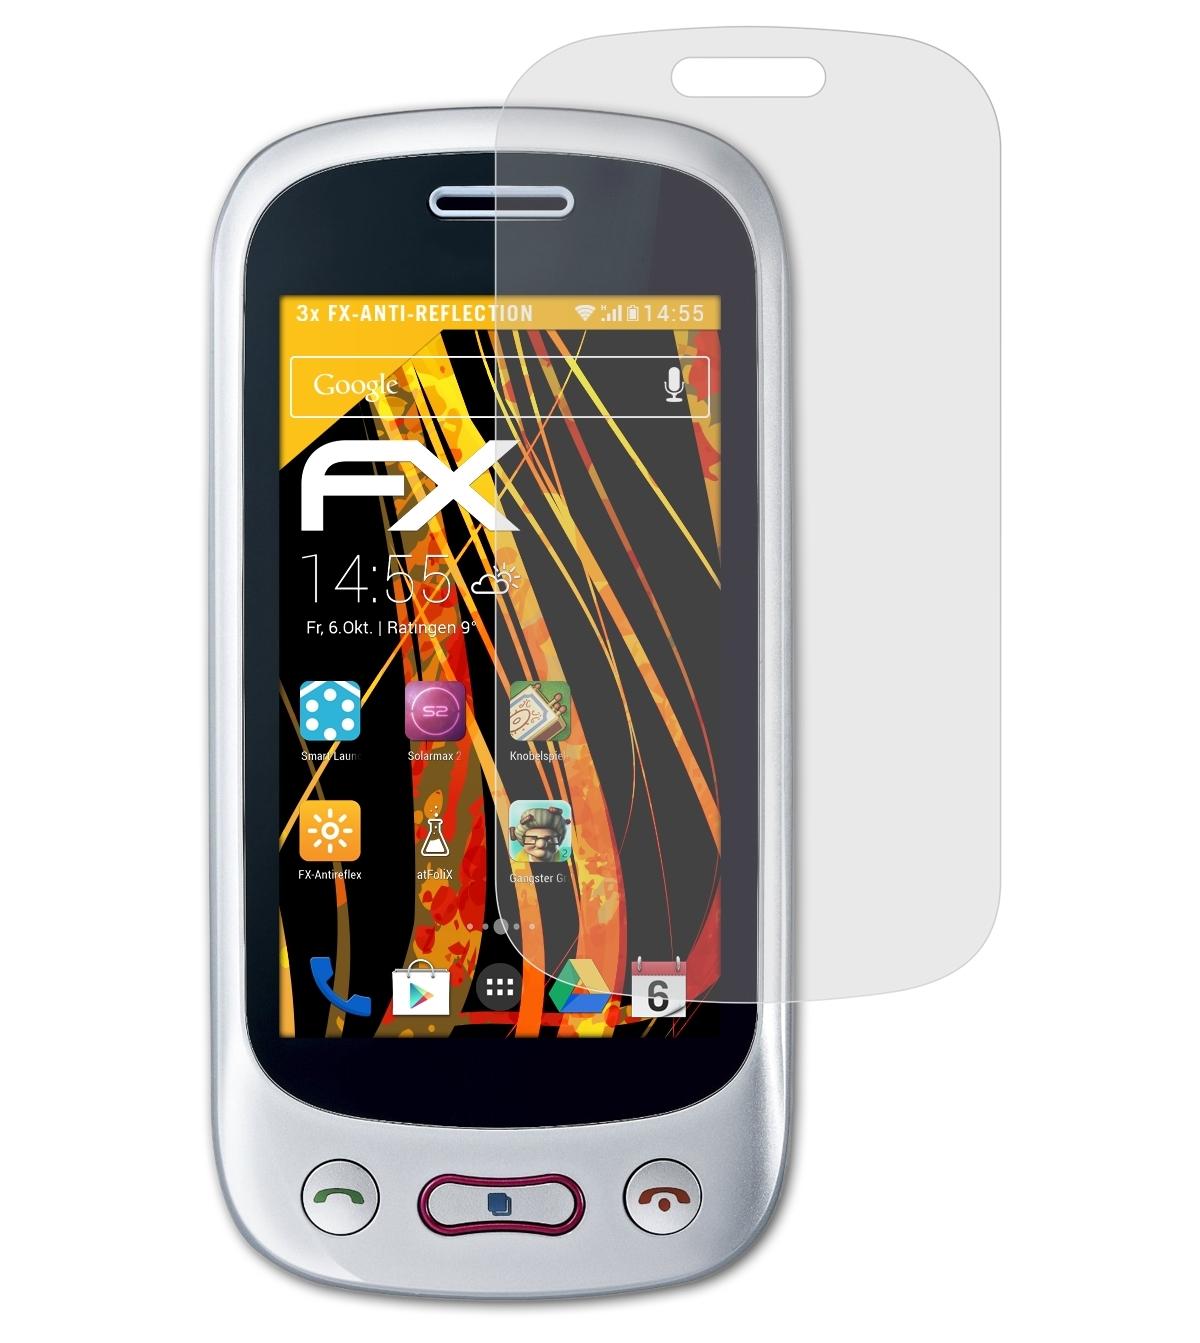 3x ATFOLIX LG GT350) FX-Antireflex Displayschutz(für